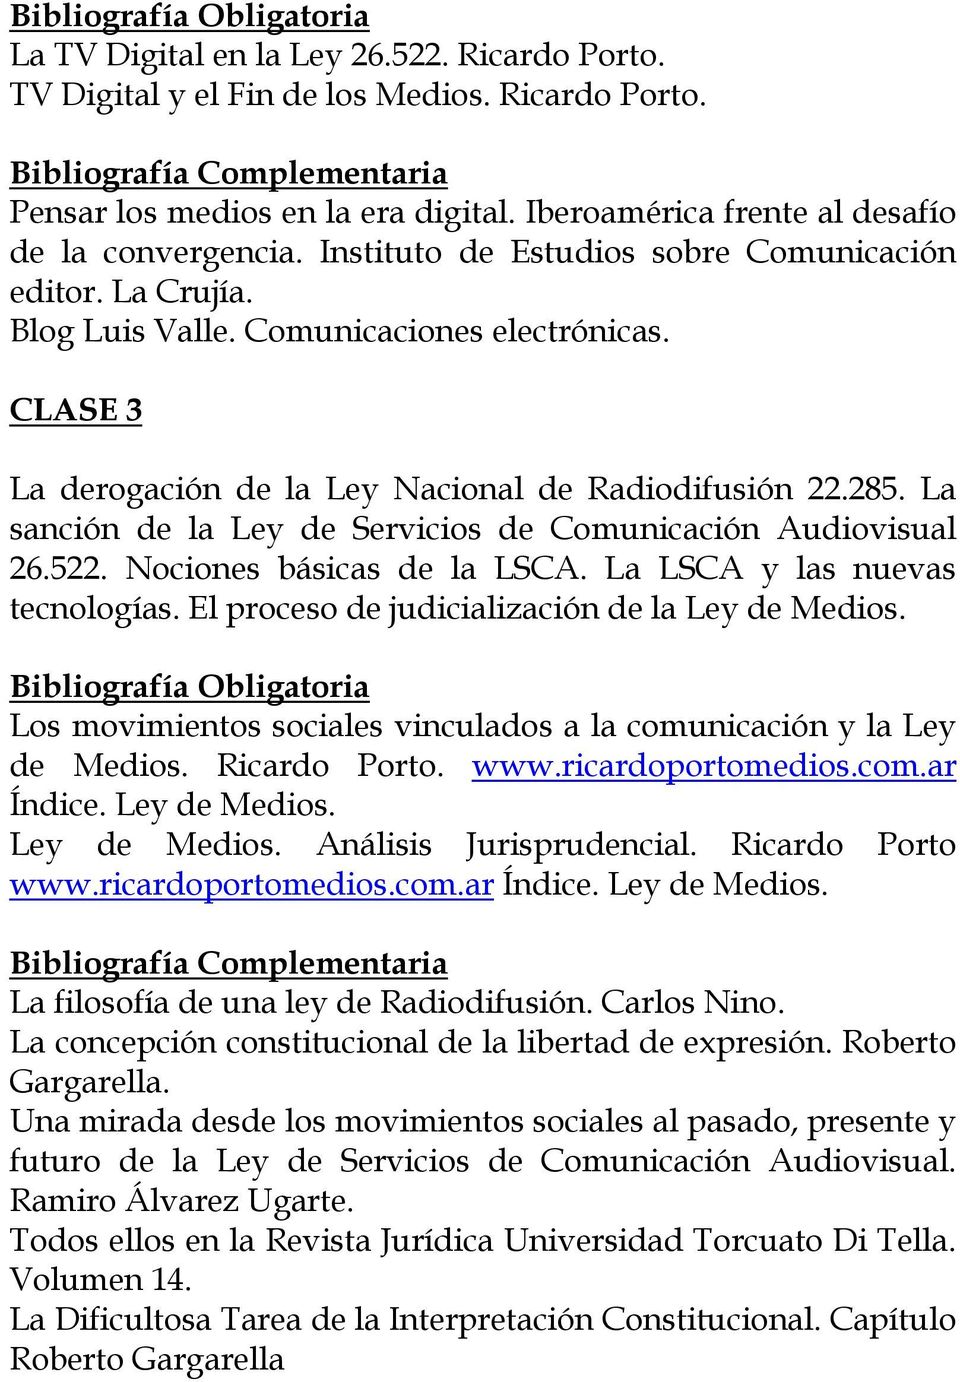 La sanción de la Ley de Servicios de Comunicación Audiovisual 26.522. Nociones básicas de la LSCA. La LSCA y las nuevas tecnologías. El proceso de judicialización de la Ley de Medios.